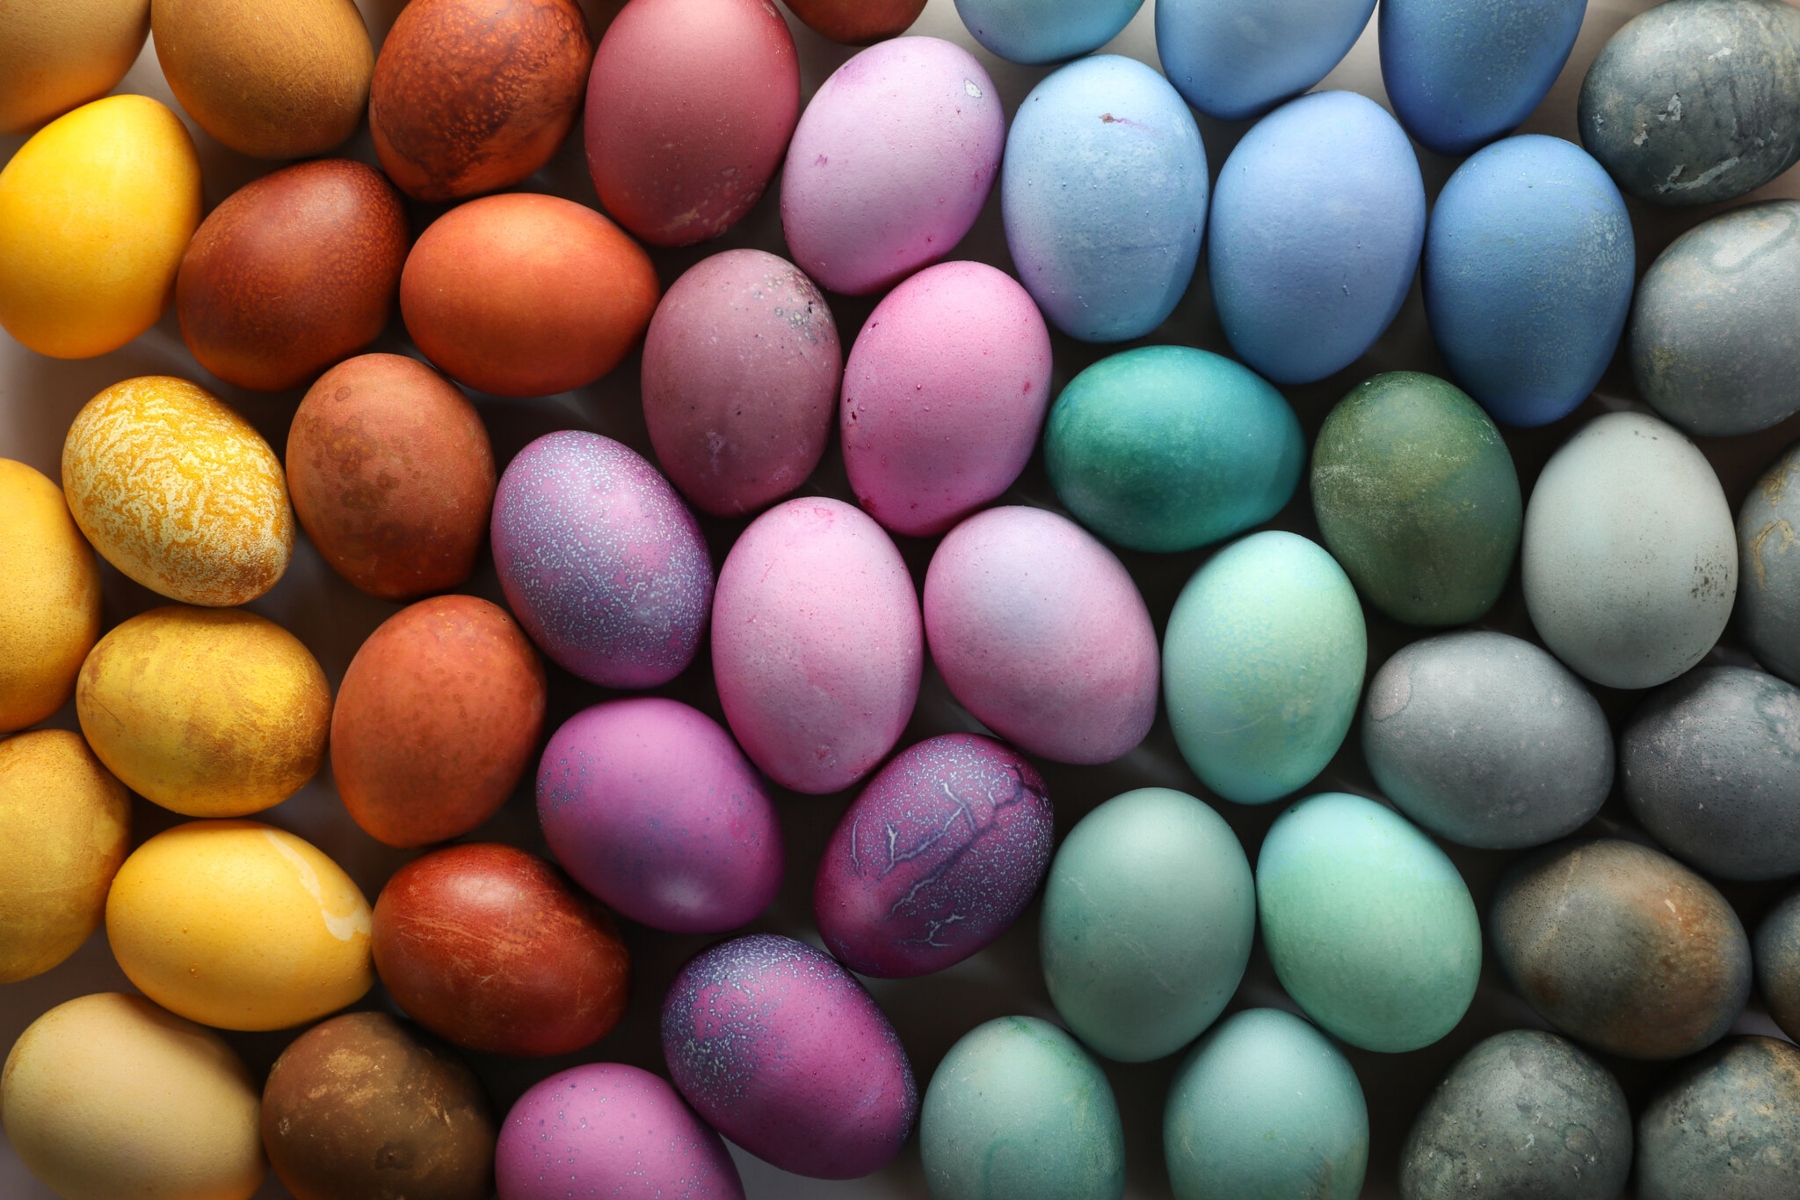 Βαφή αυγών: Πώς να βάψετε τα αυγά με φυσικό τρόπο;